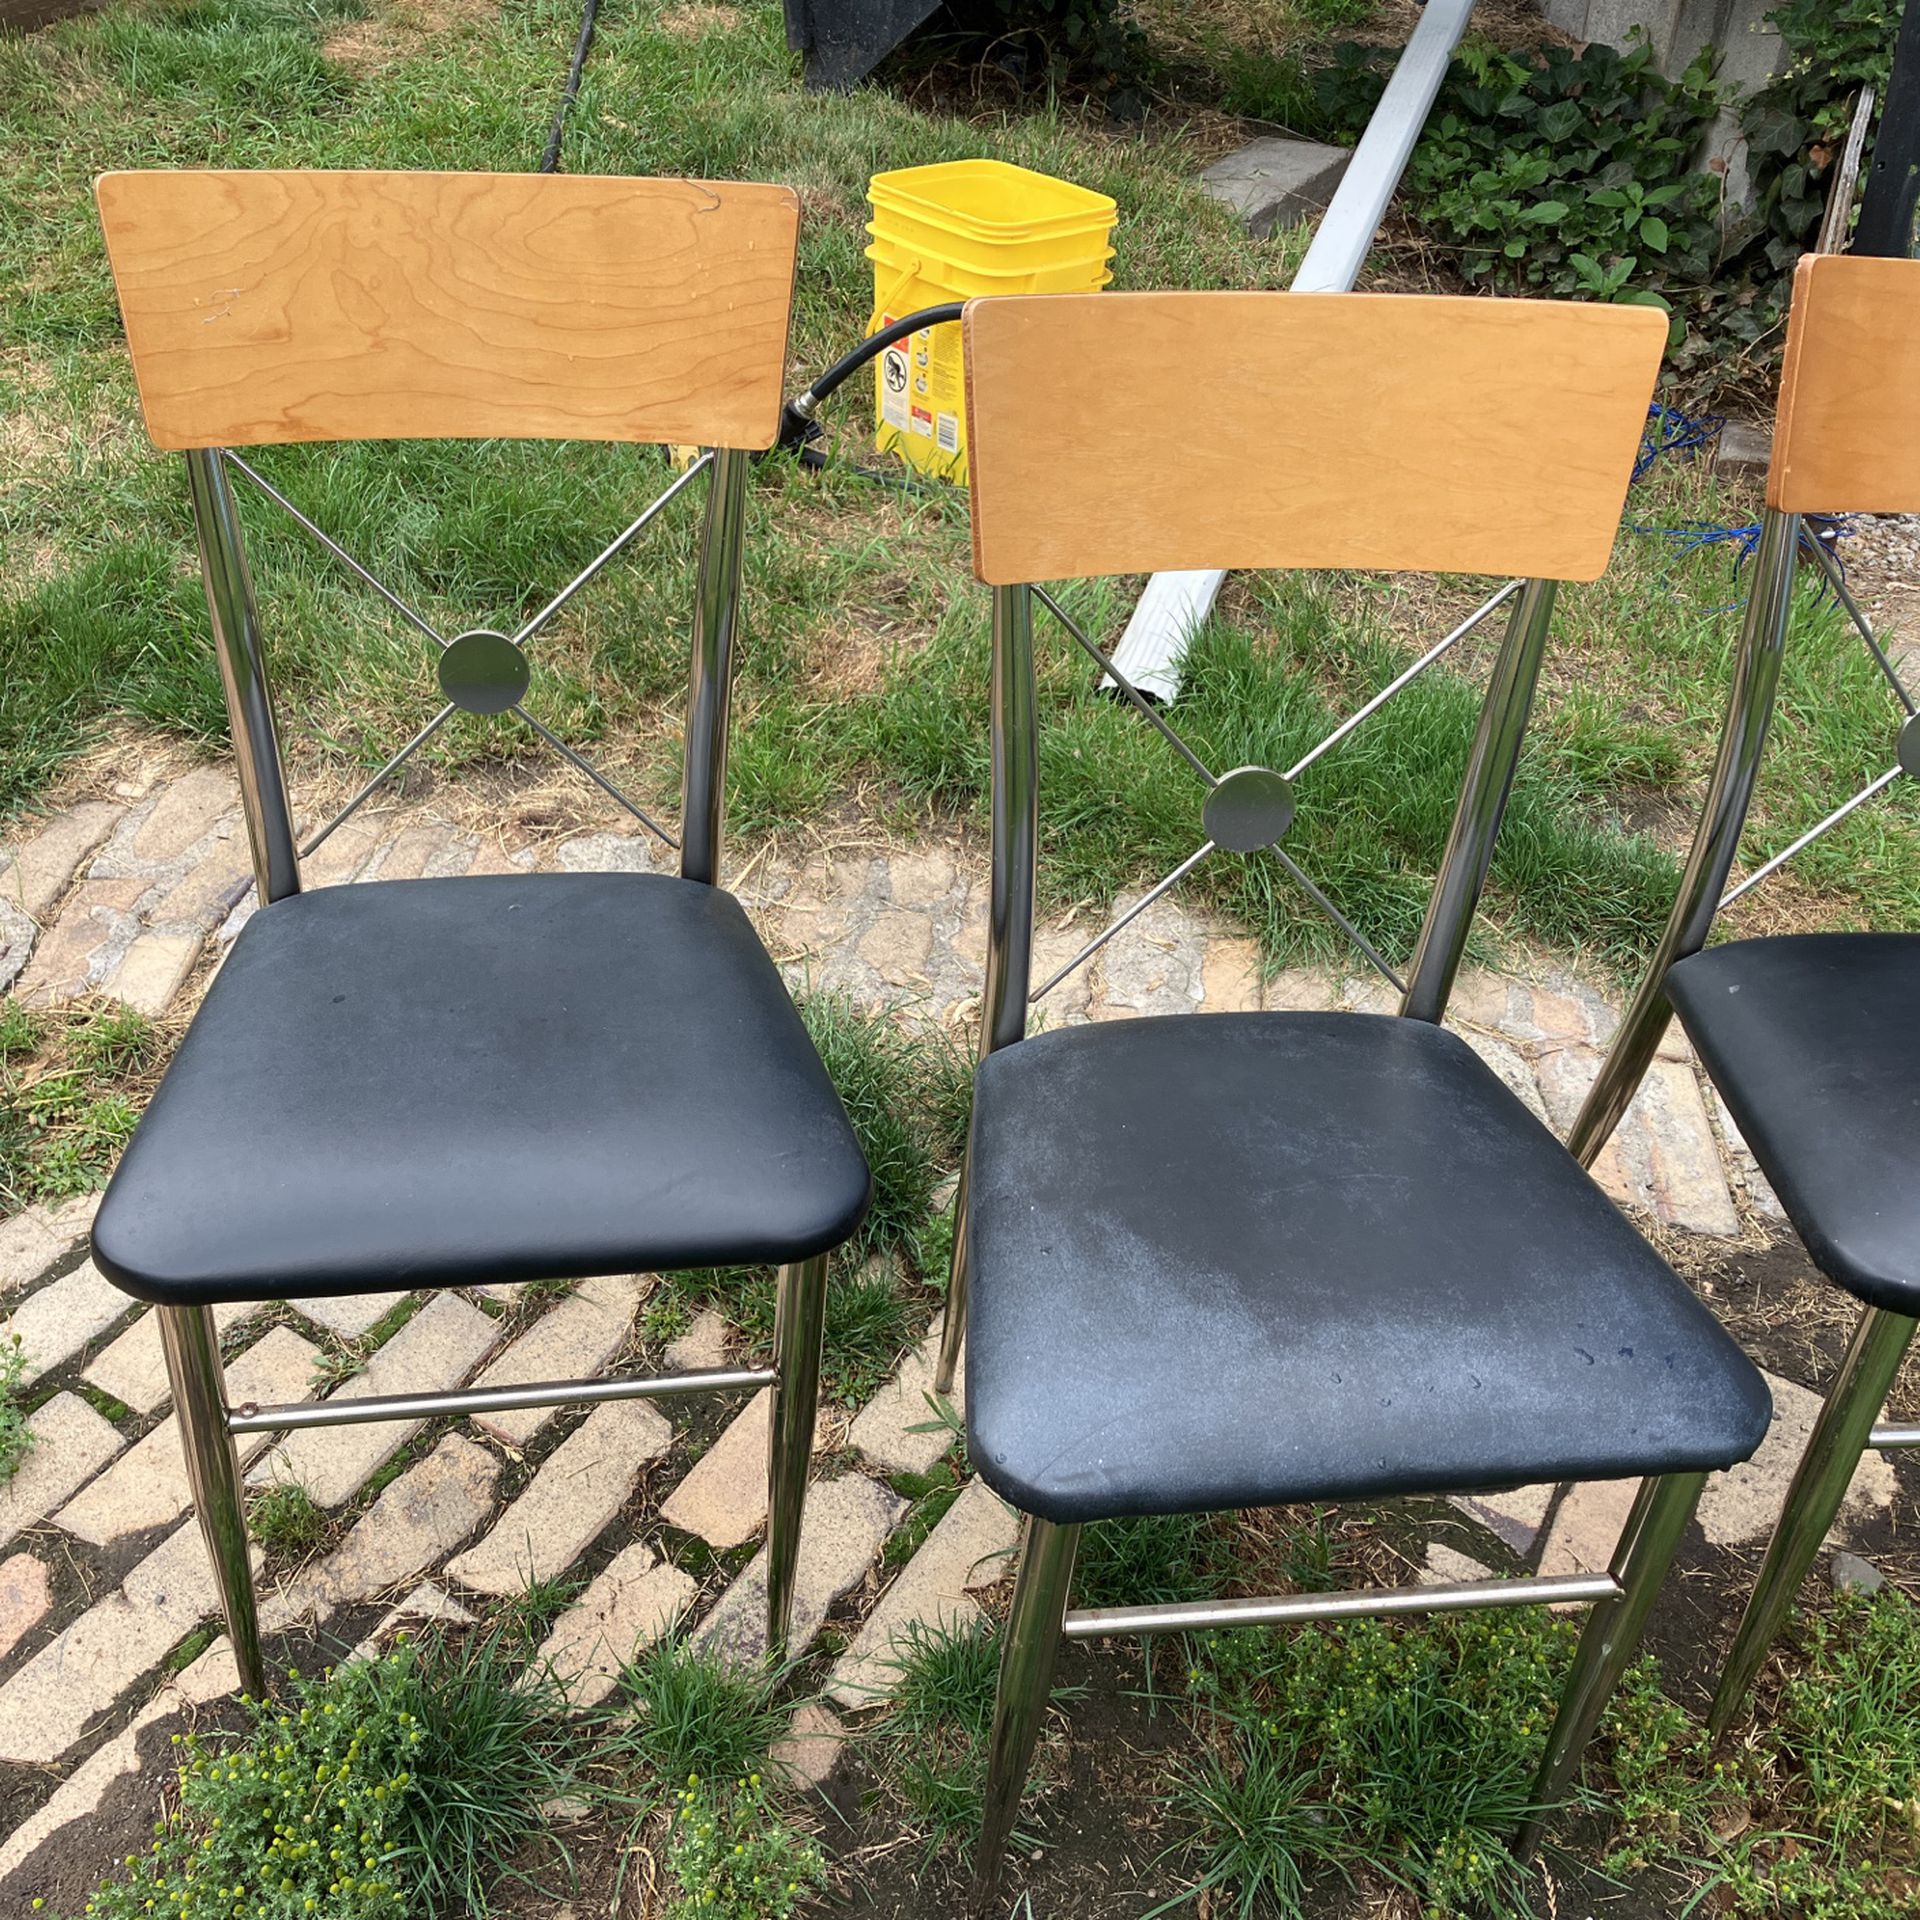 Kitchen Chairs 